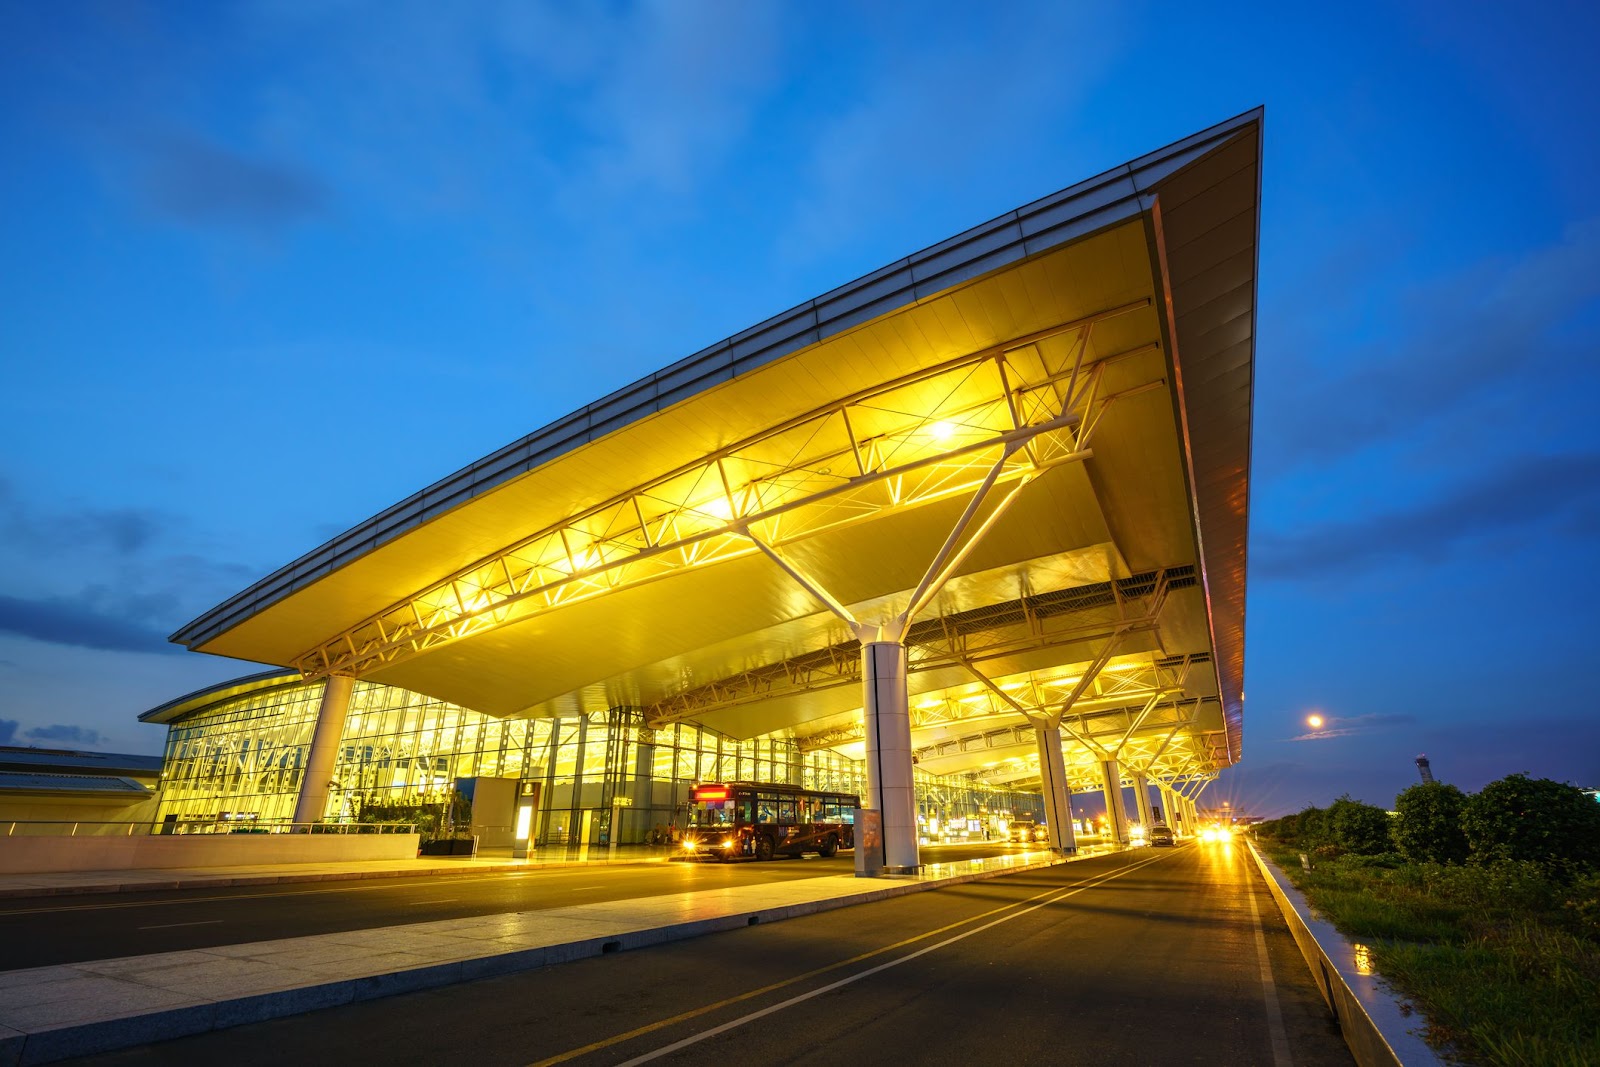 Gửi xe ở sân bay Nội Bài: Hướng dẫn toàn tập [2023]